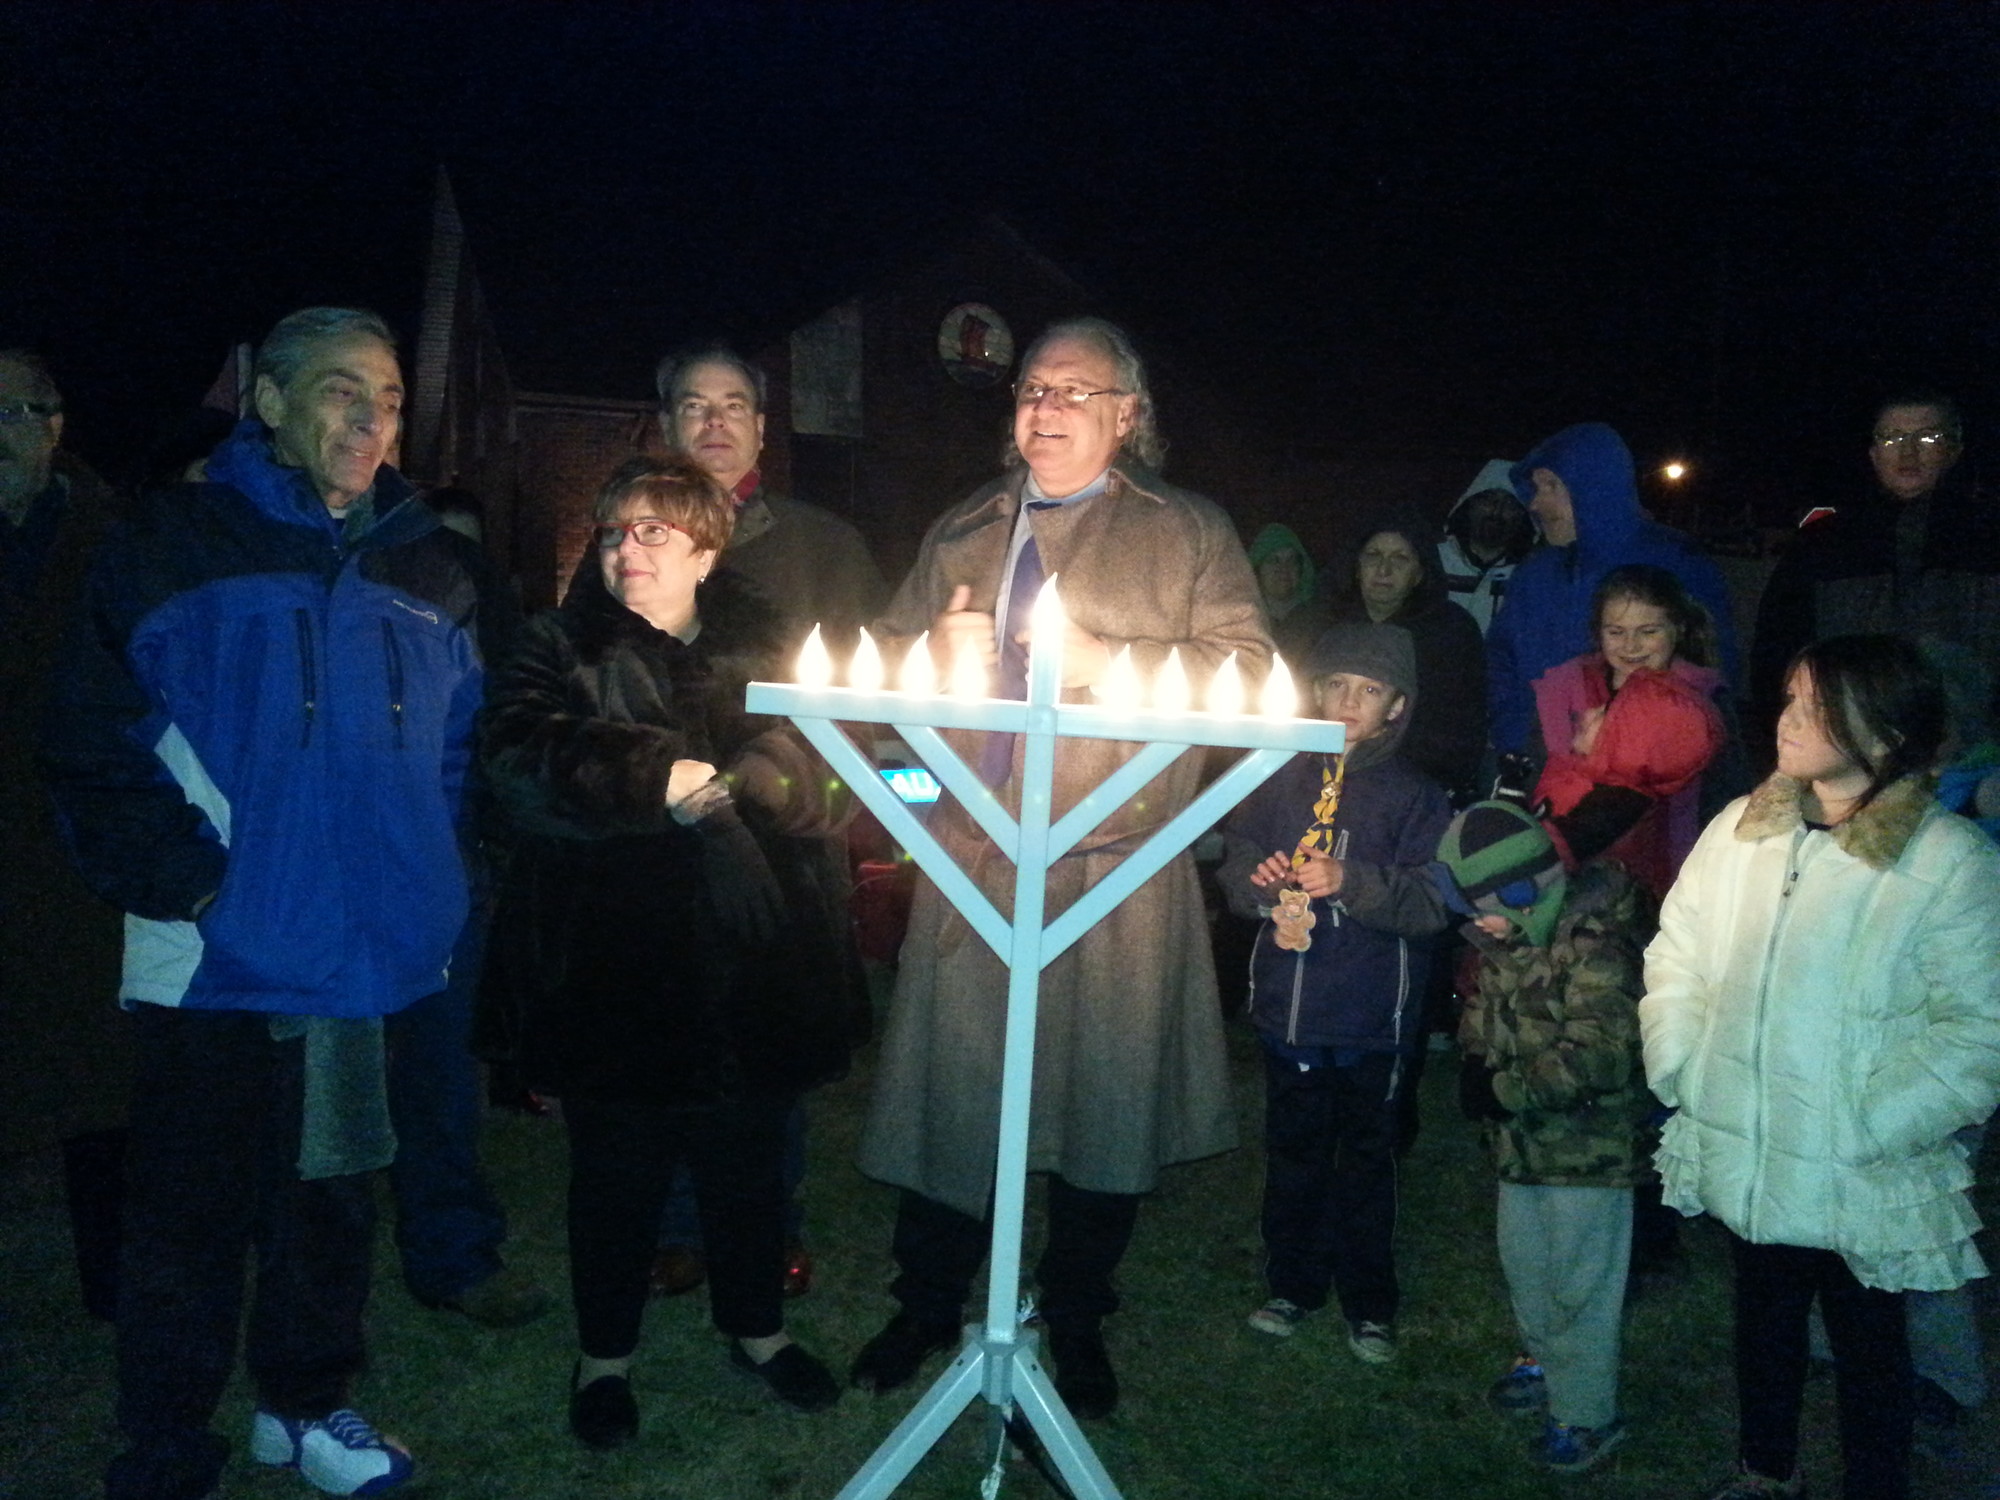 Rabbi Paul Hoffman lit the menorah last Saturday in Island Park.